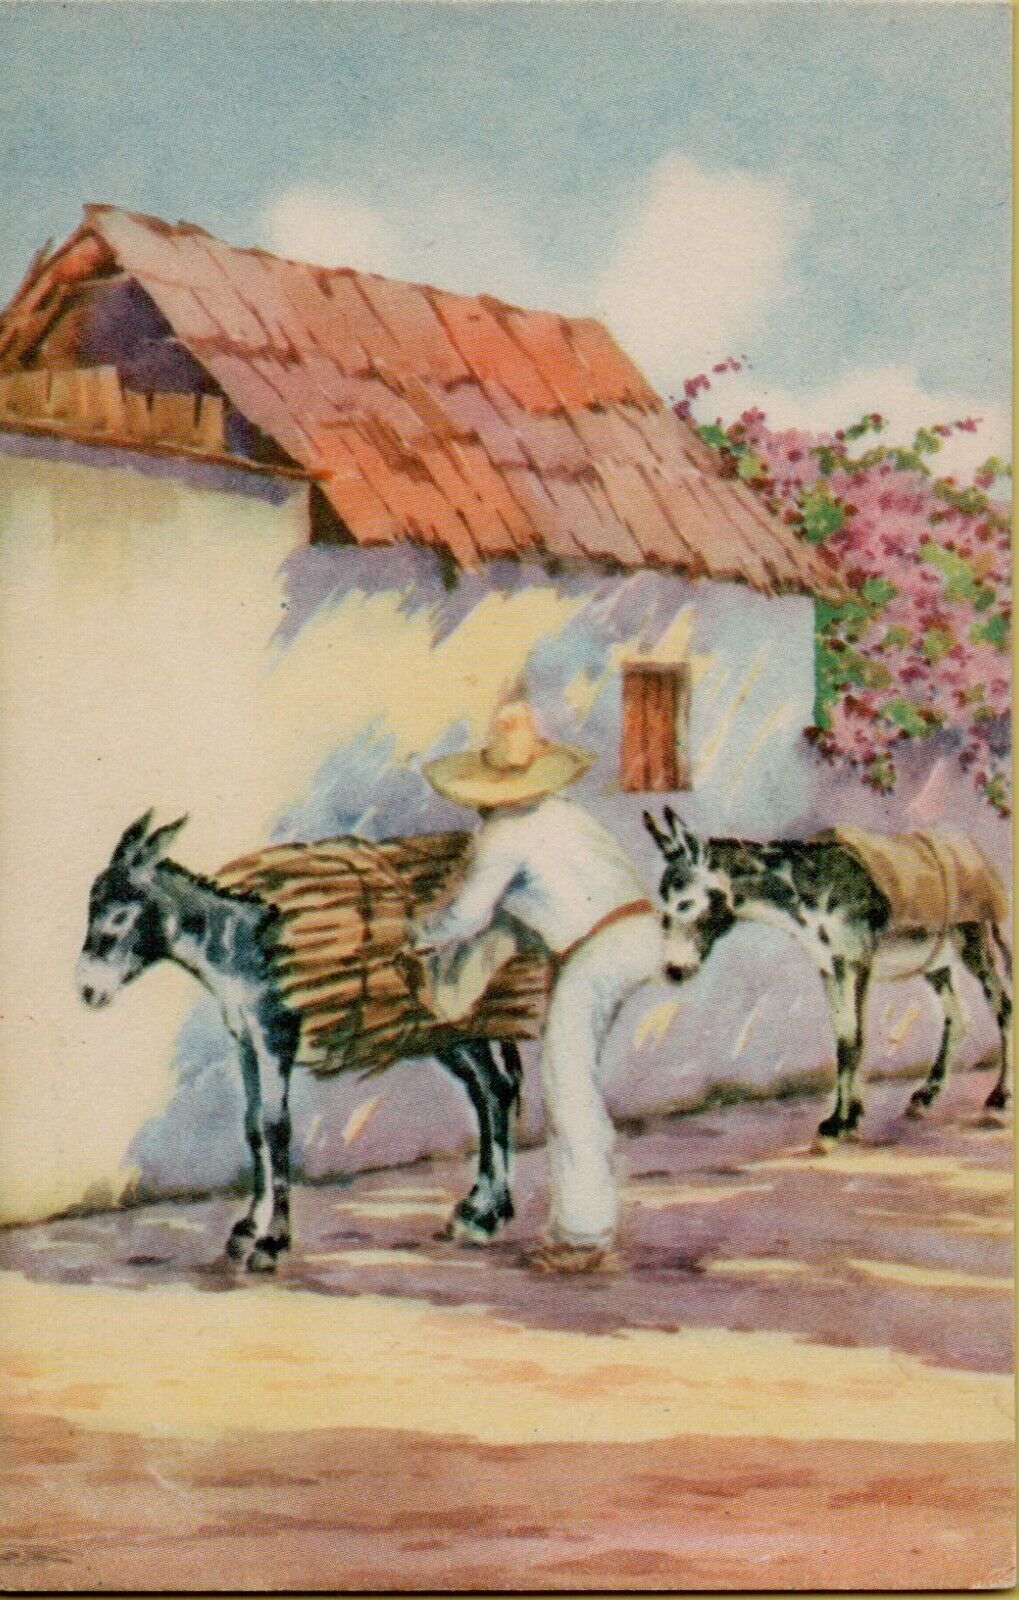 Man with Donkeys Mexican Postcard Tarjeta Postal Motivo Tipico Mexico Sombrero